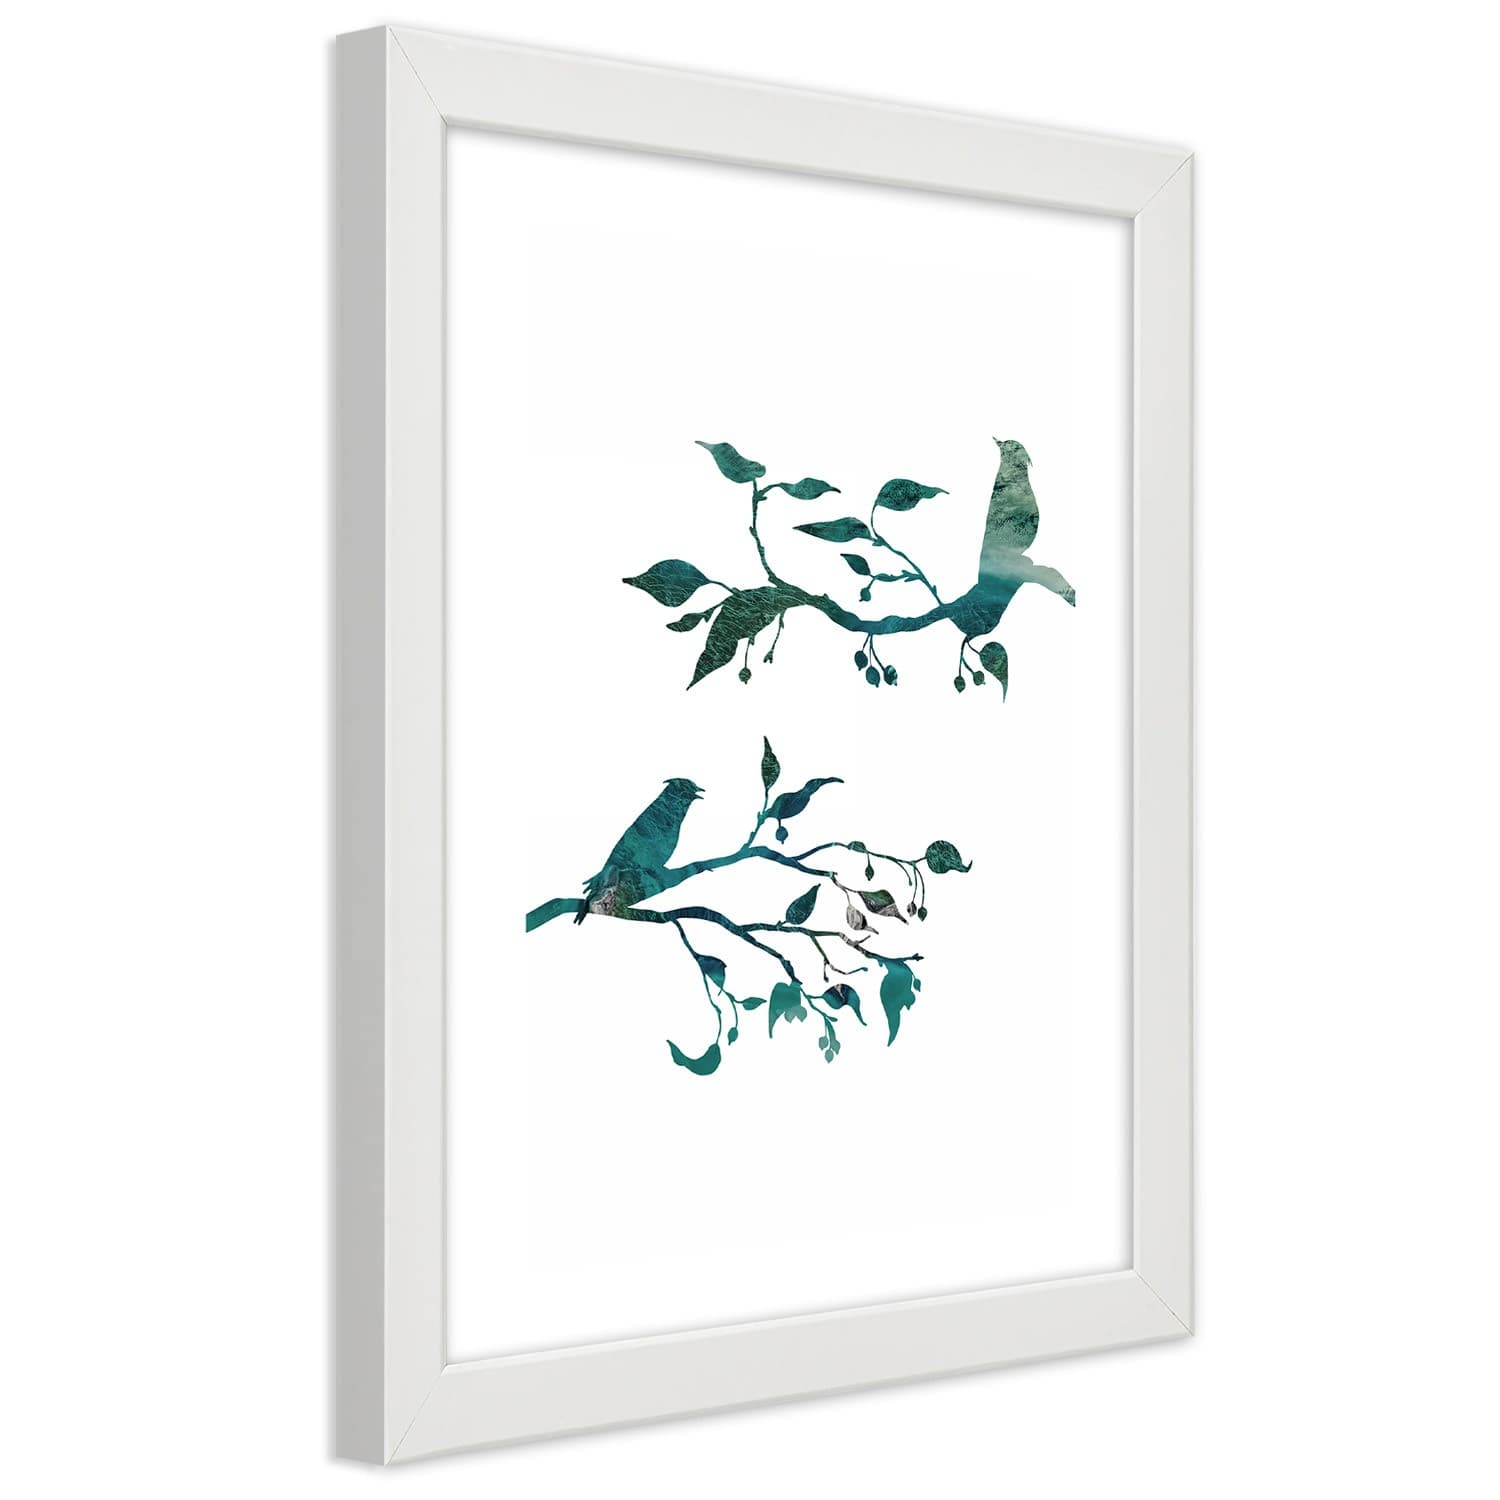 Plakat w ramie białej, Ptaki na gałązkach (Rozmiar 60x90)